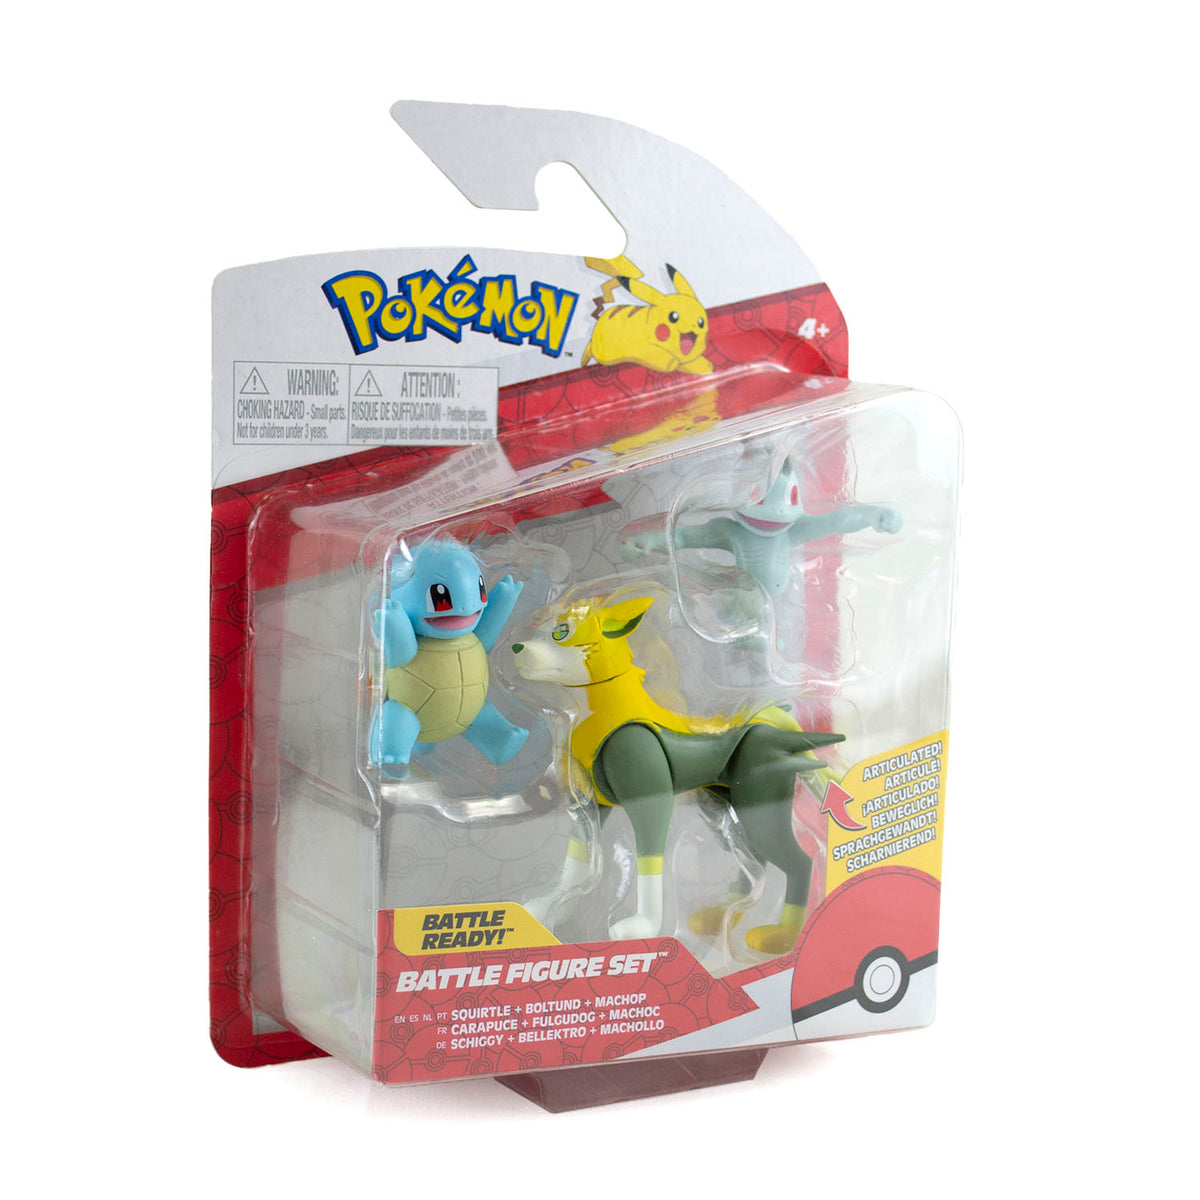 Compre Pokémon - 3 Figuras De Ação - Lucario + Zorua + Pikachu aqui na  Sunny Brinquedos.